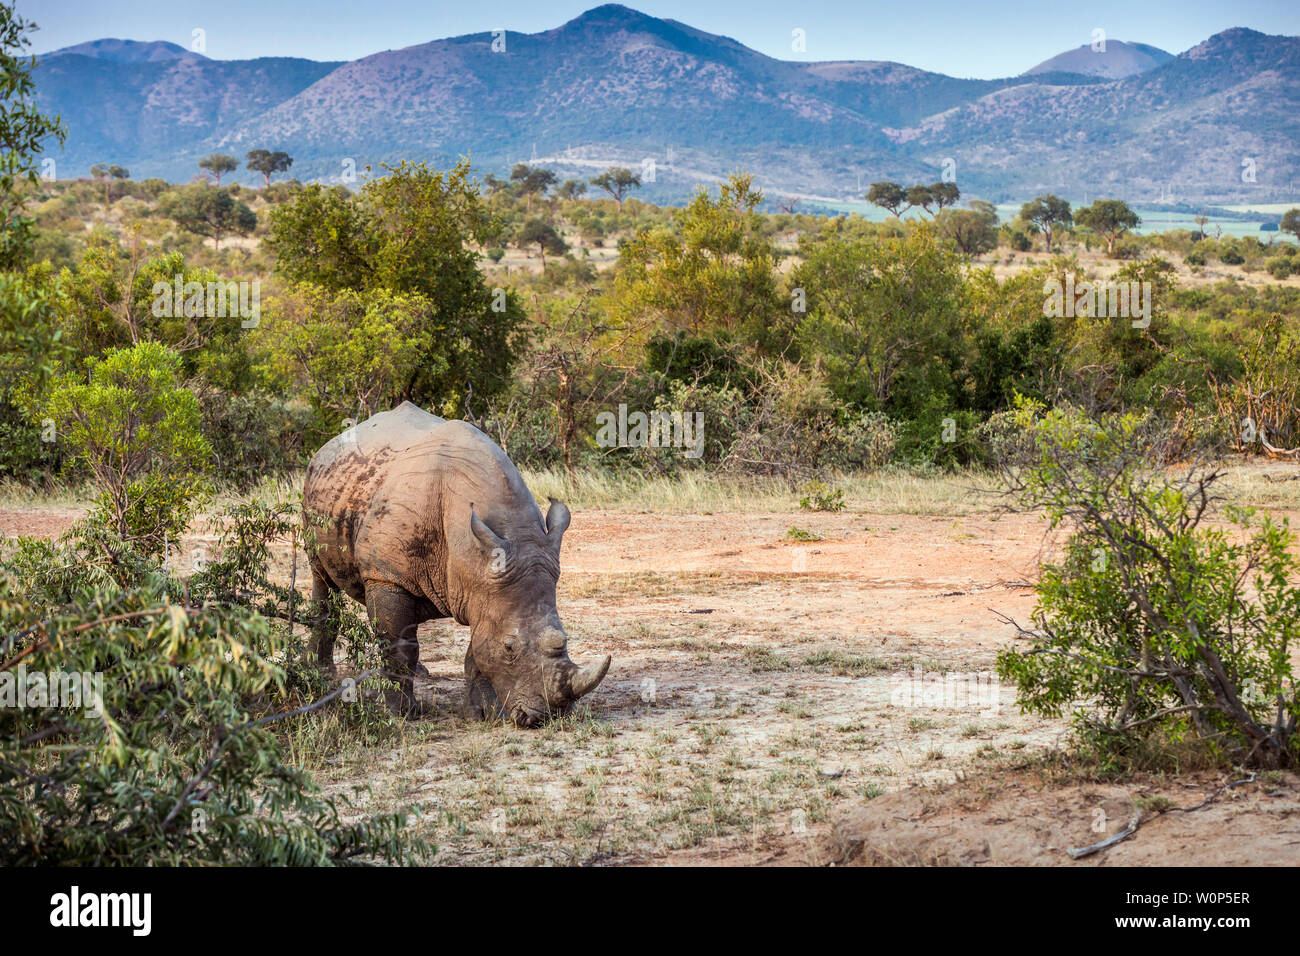 Rhinocéros blanc du sud dans la région de beaux paysages dans le parc national Kruger, Afrique du Sud ; Espèce Ceratotherium simum simum famille des Rhinocerotidae Banque D'Images